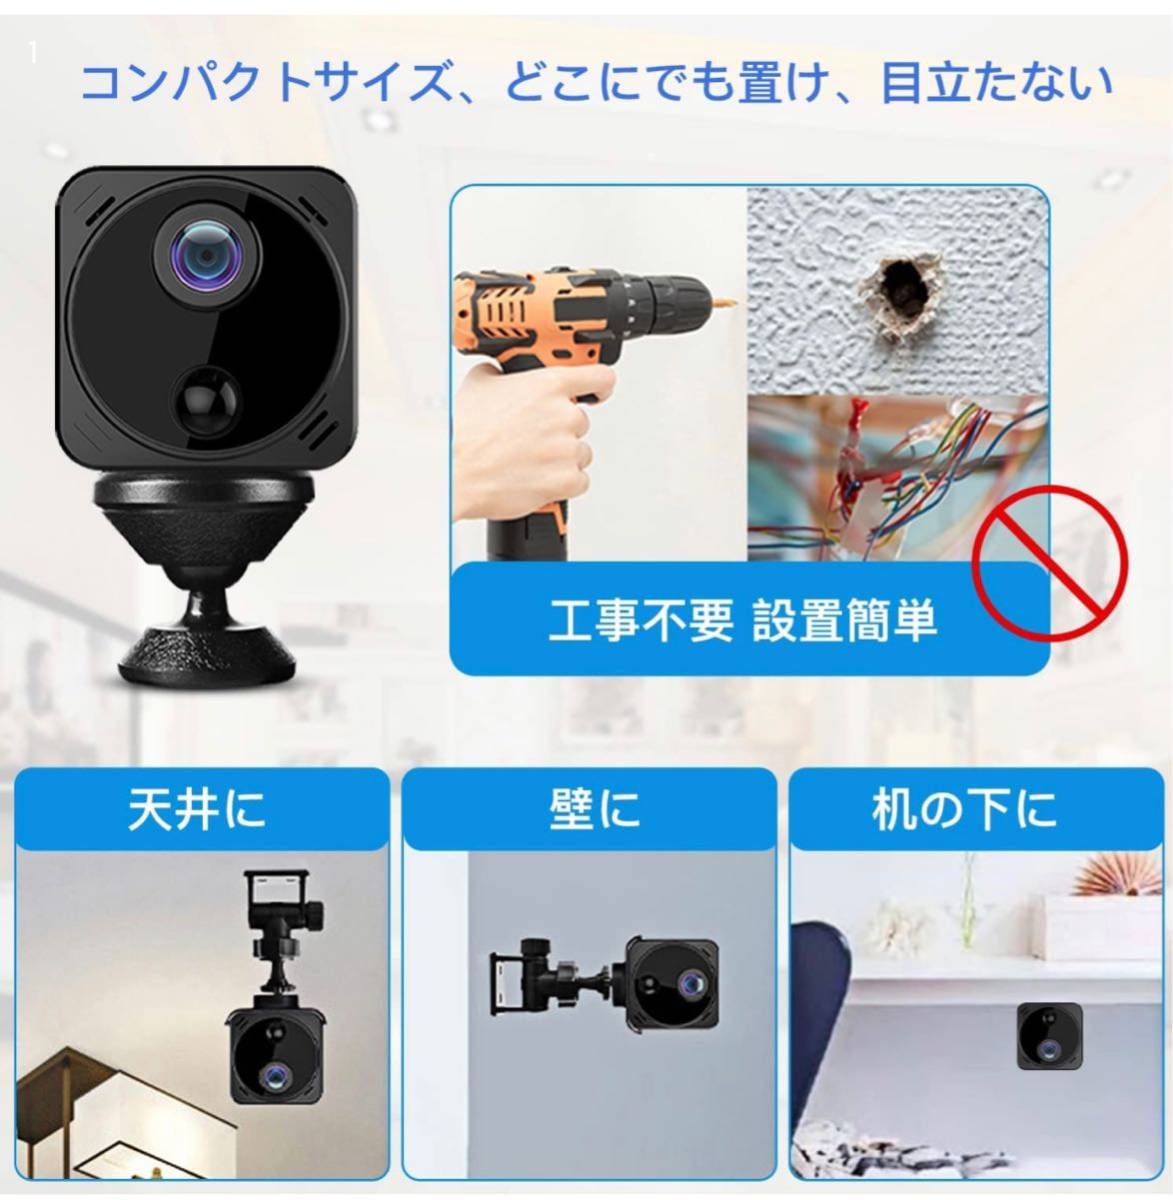 小型カメラ 防犯カメラ 録画 録音機能 超小型 防犯監視カメラ 簡単設置